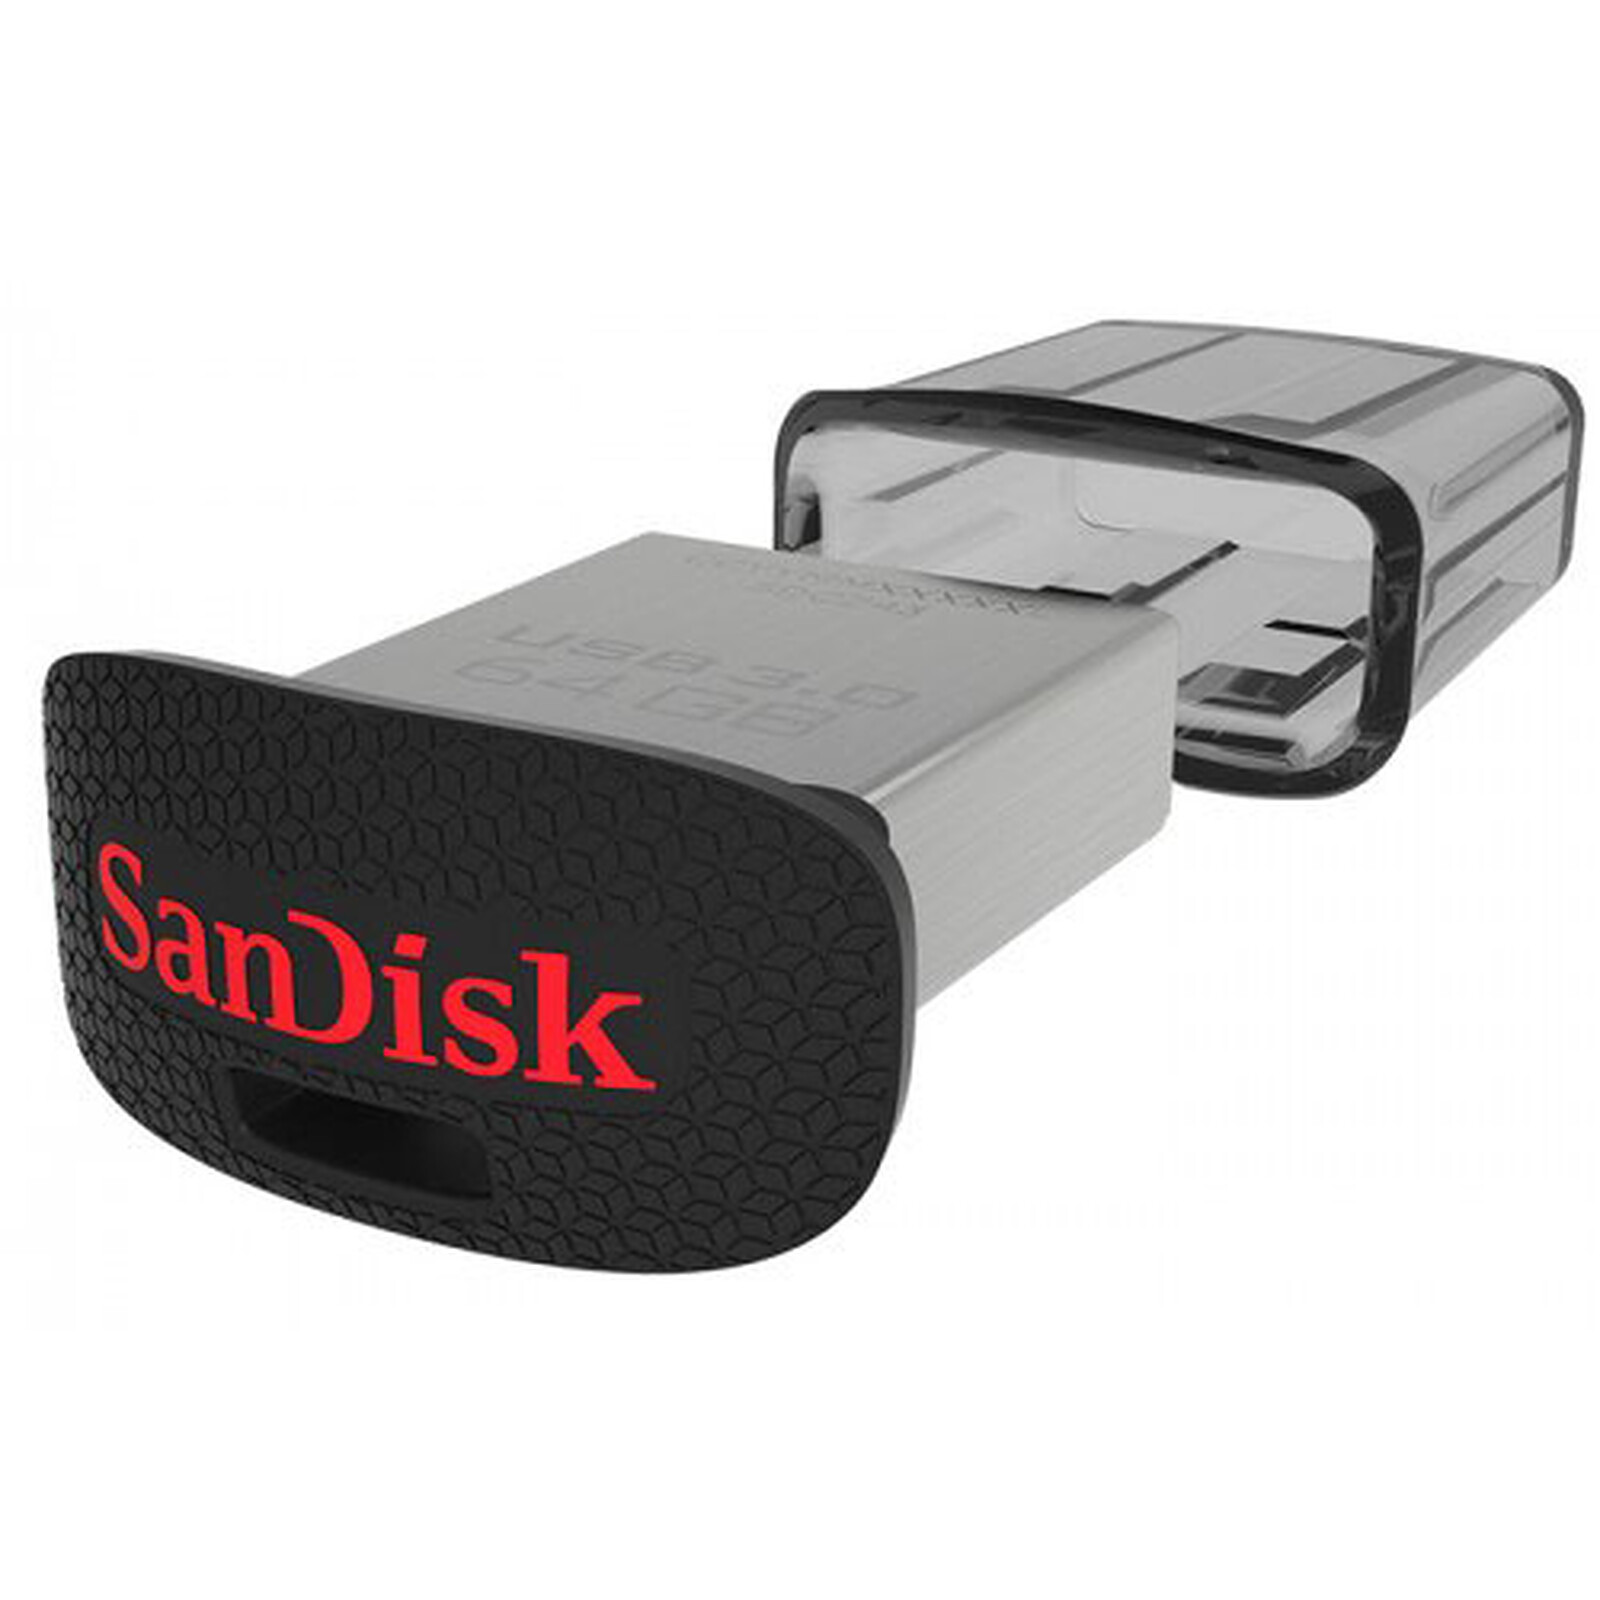 Lot de 2 clés USB 3.0 Sandisk Ultra 64 Go à 12,99 euros (Terminé)